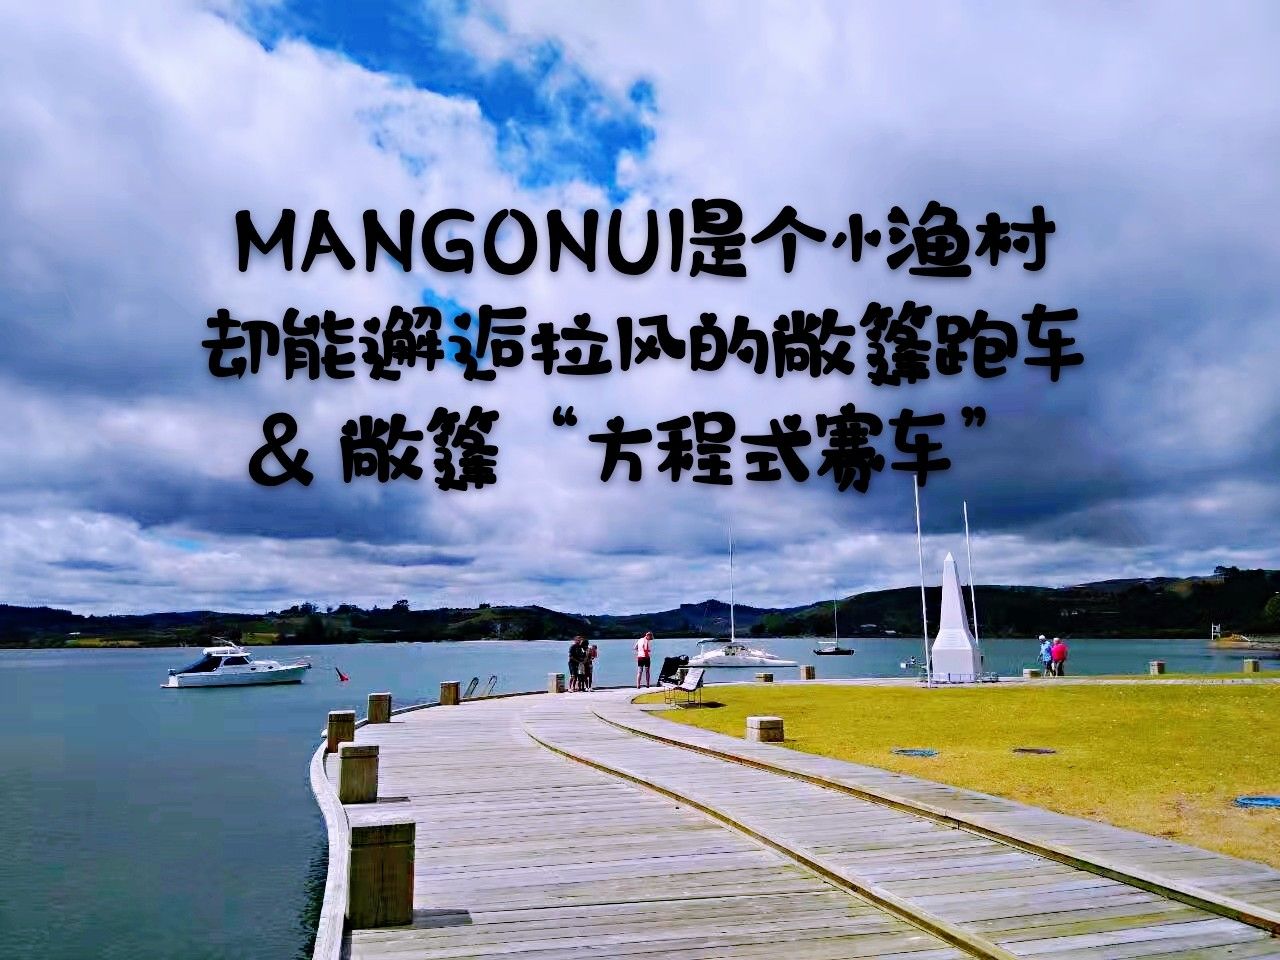 Mangonui其实也就是个小小的渔村，主要的街道沿海港就那么一条，可就是这么小小的地方，很干净很整